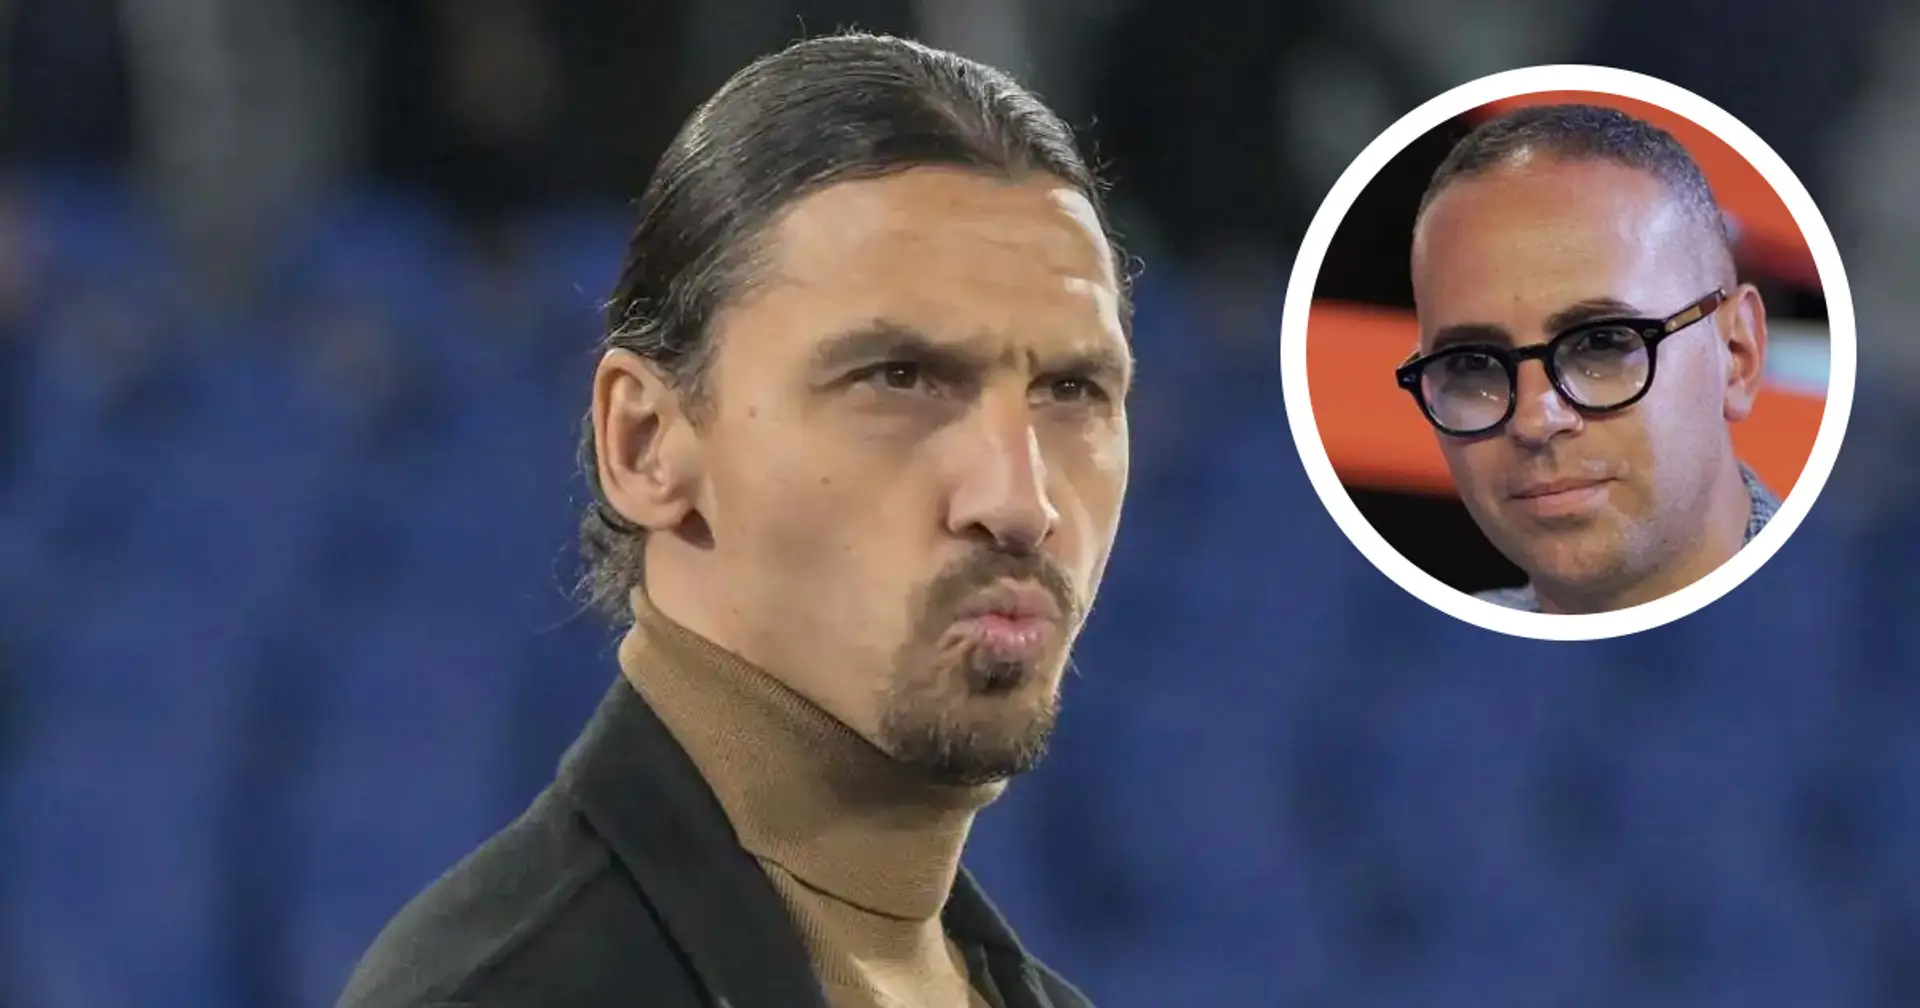 "Sarebbe una delusione": Criscitiello critica i poteri di Ibra al Milan, intervenga sul futuro allenatore